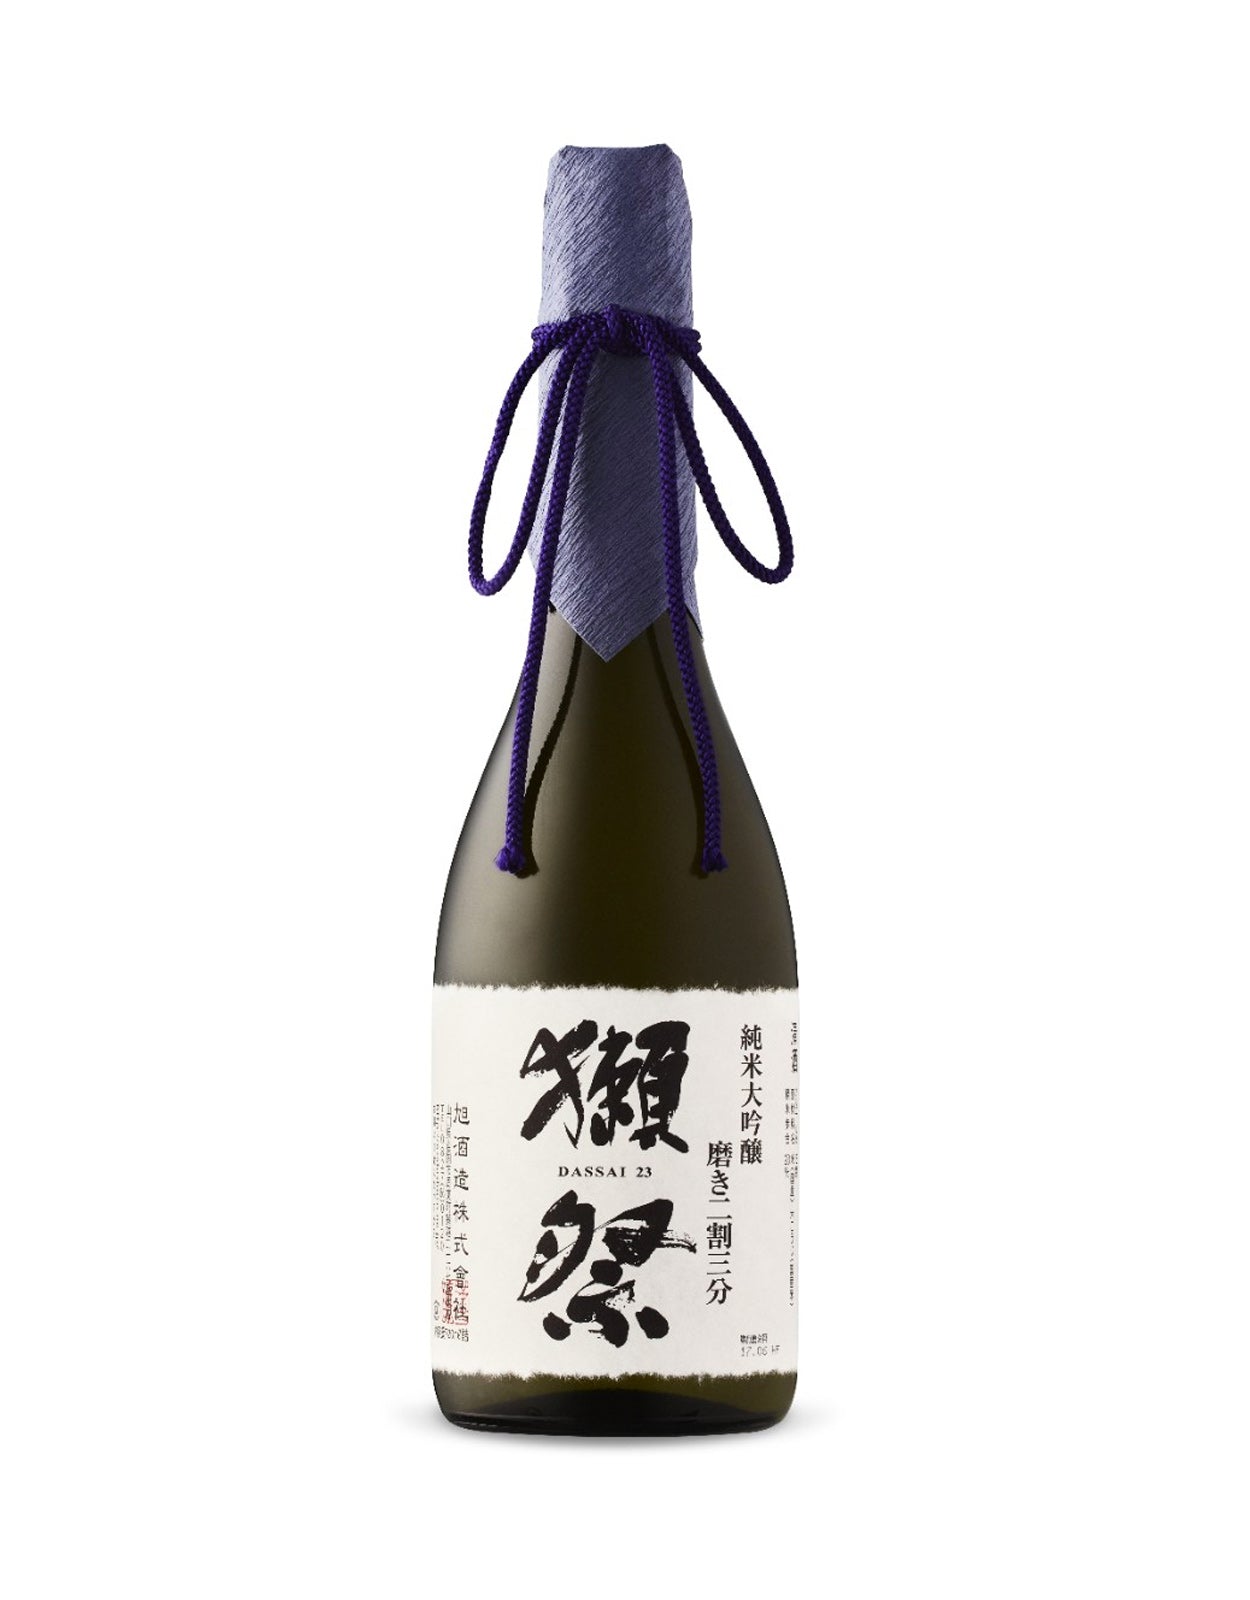 Asahi Shuzo Dassai '23' Junmai Daiginjo Sake - 300 ml